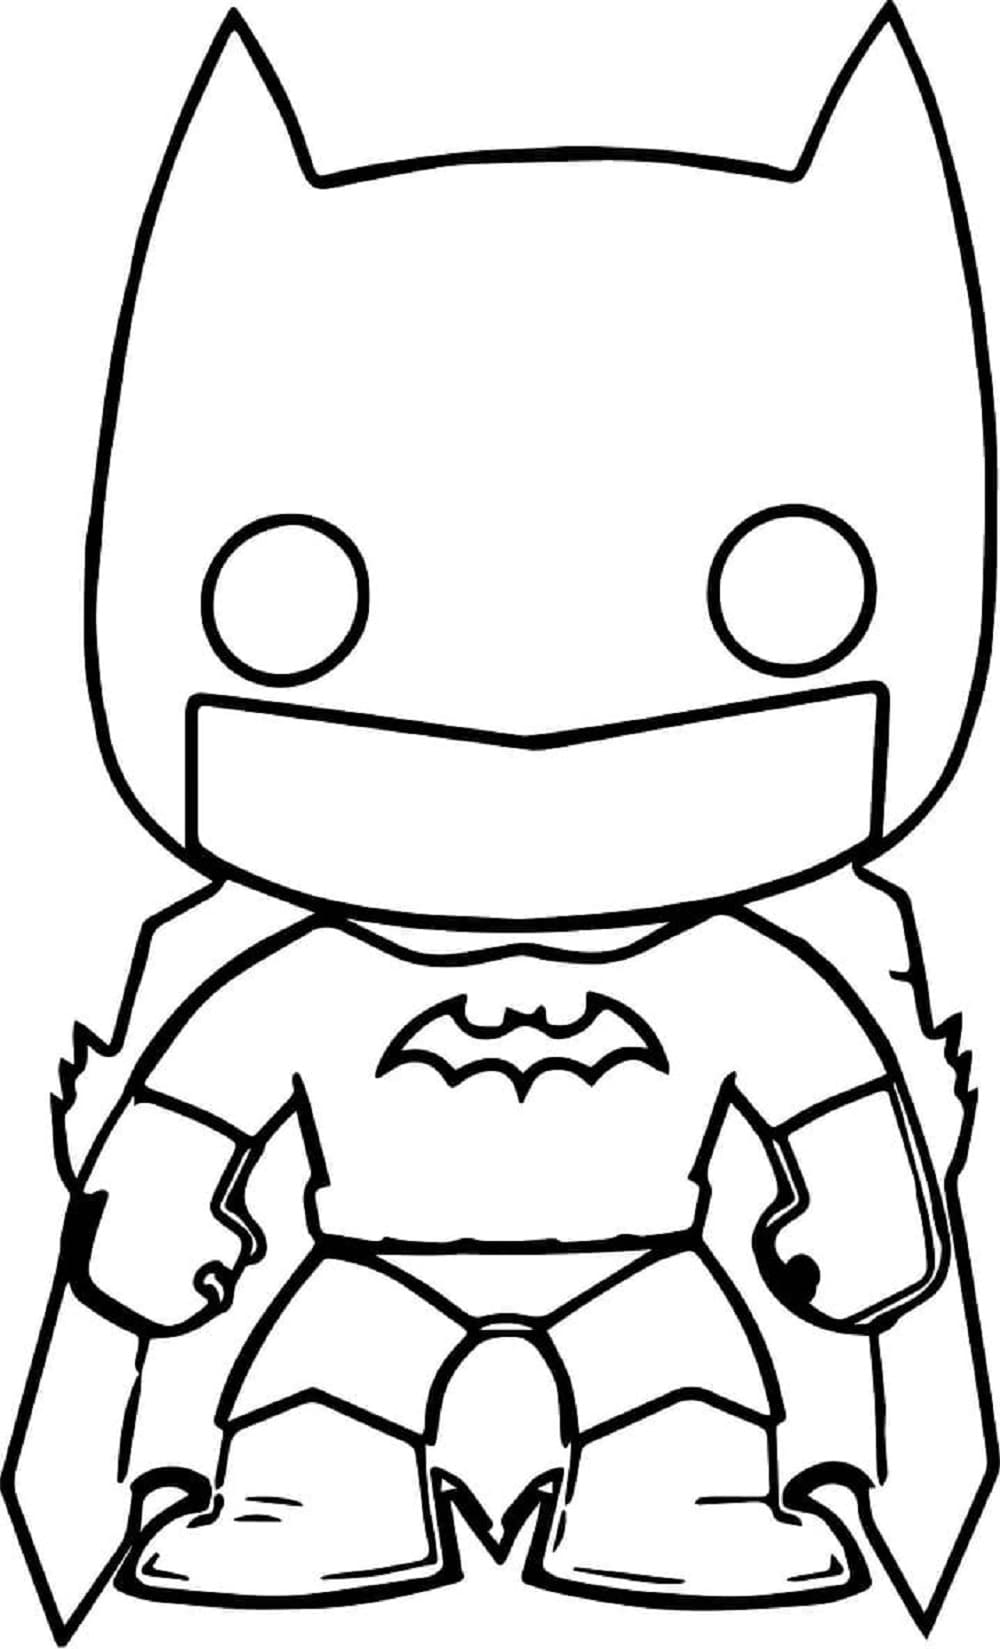 Printable Funko Pop Batman Coloring Page